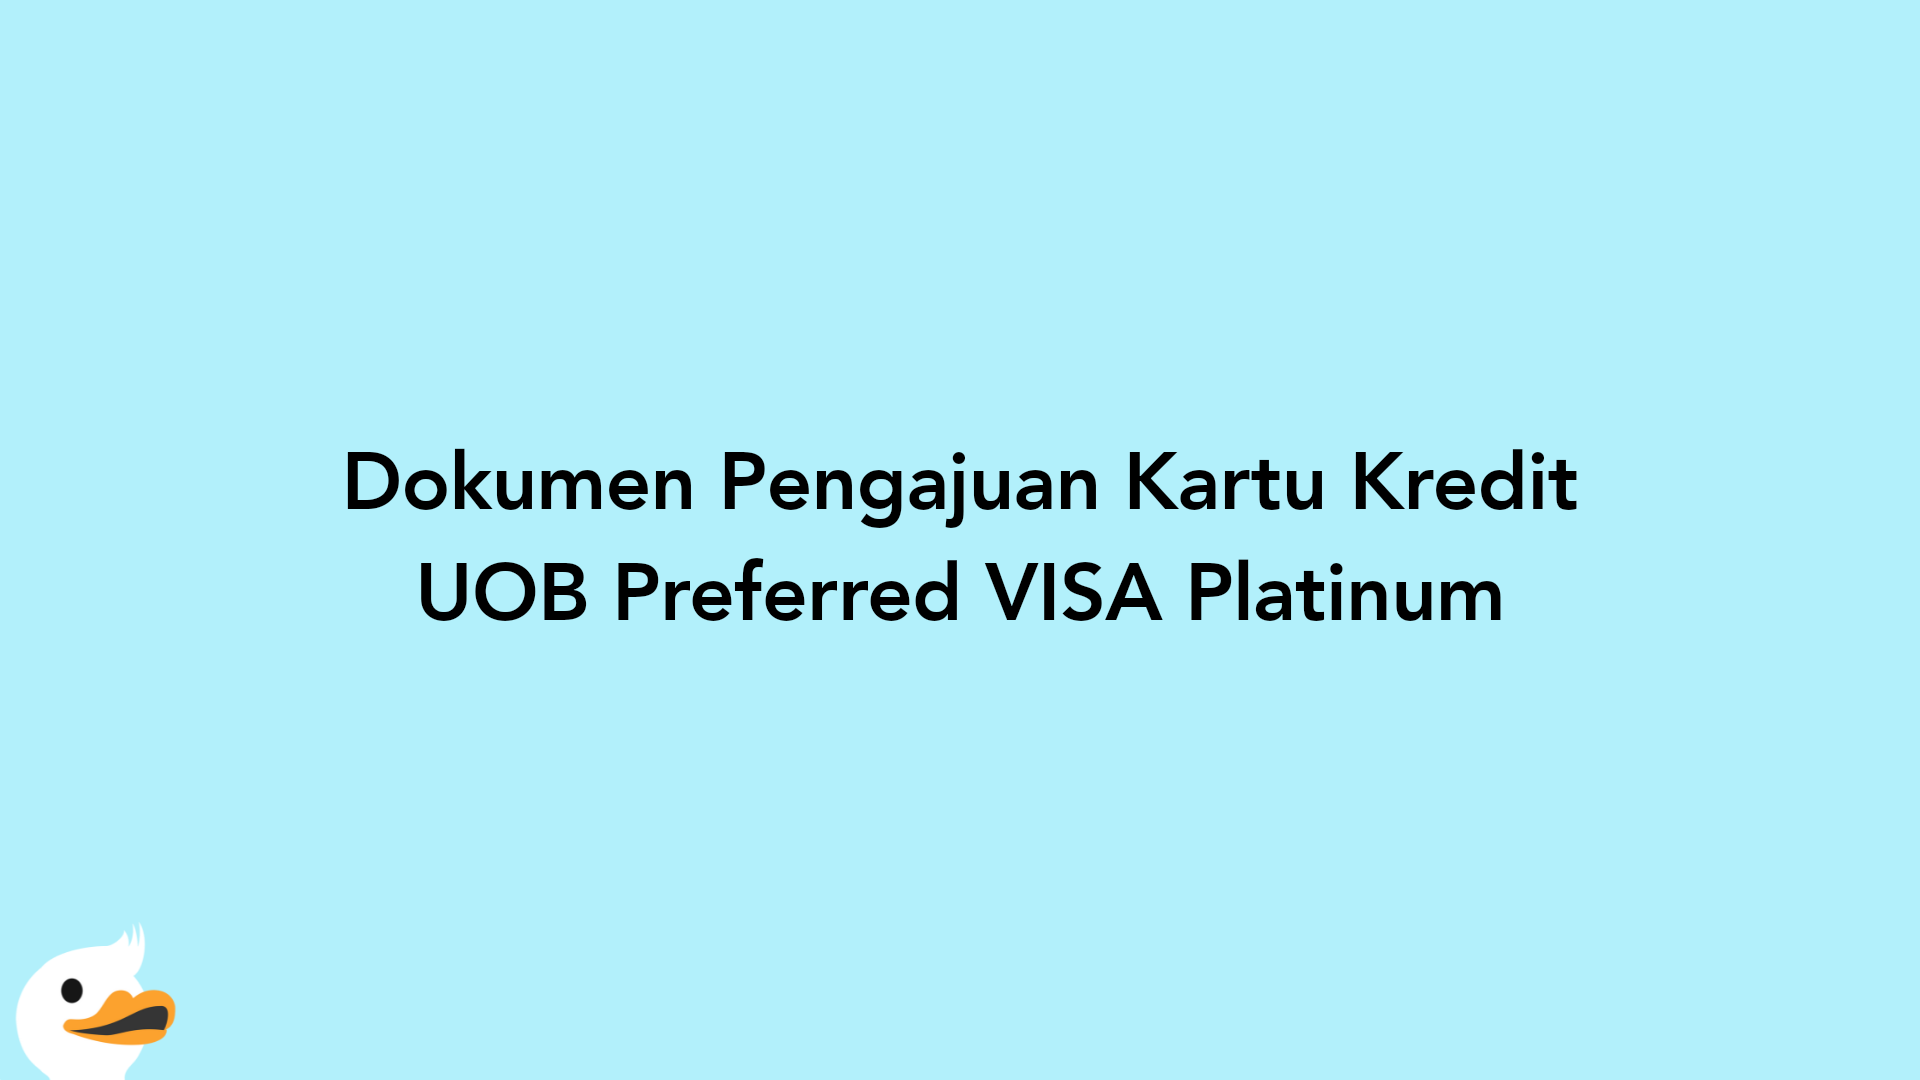 Dokumen Pengajuan Kartu Kredit UOB Preferred VISA Platinum